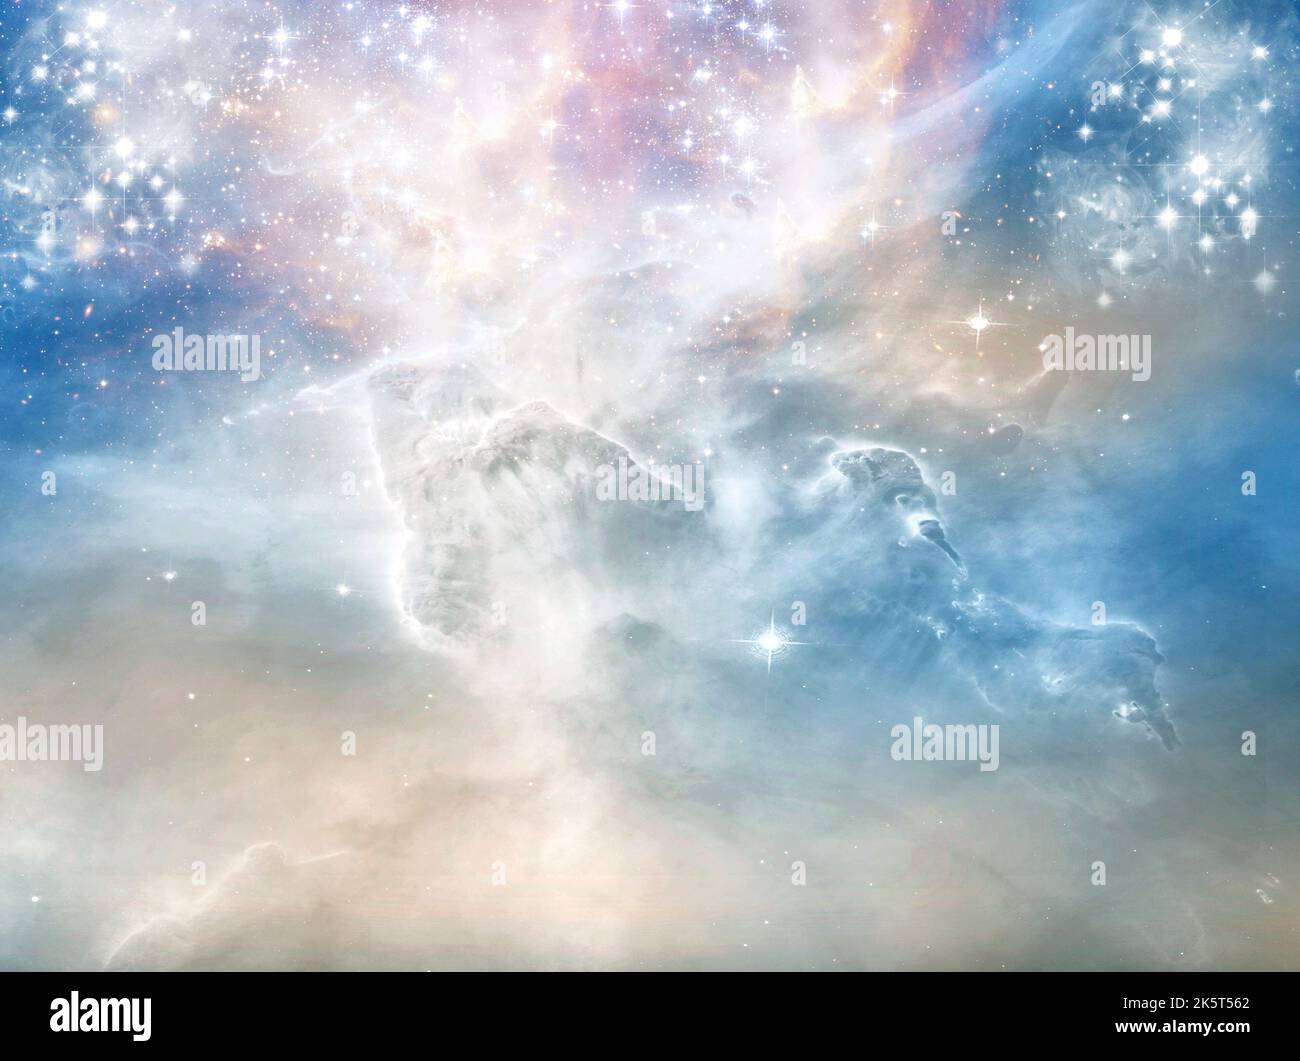 Abstrakt engelhaft mystisch mystisch magisch religiös spirituell blau und grau Hintergrund mit Sternen und bewölktem Himmel Stockfoto